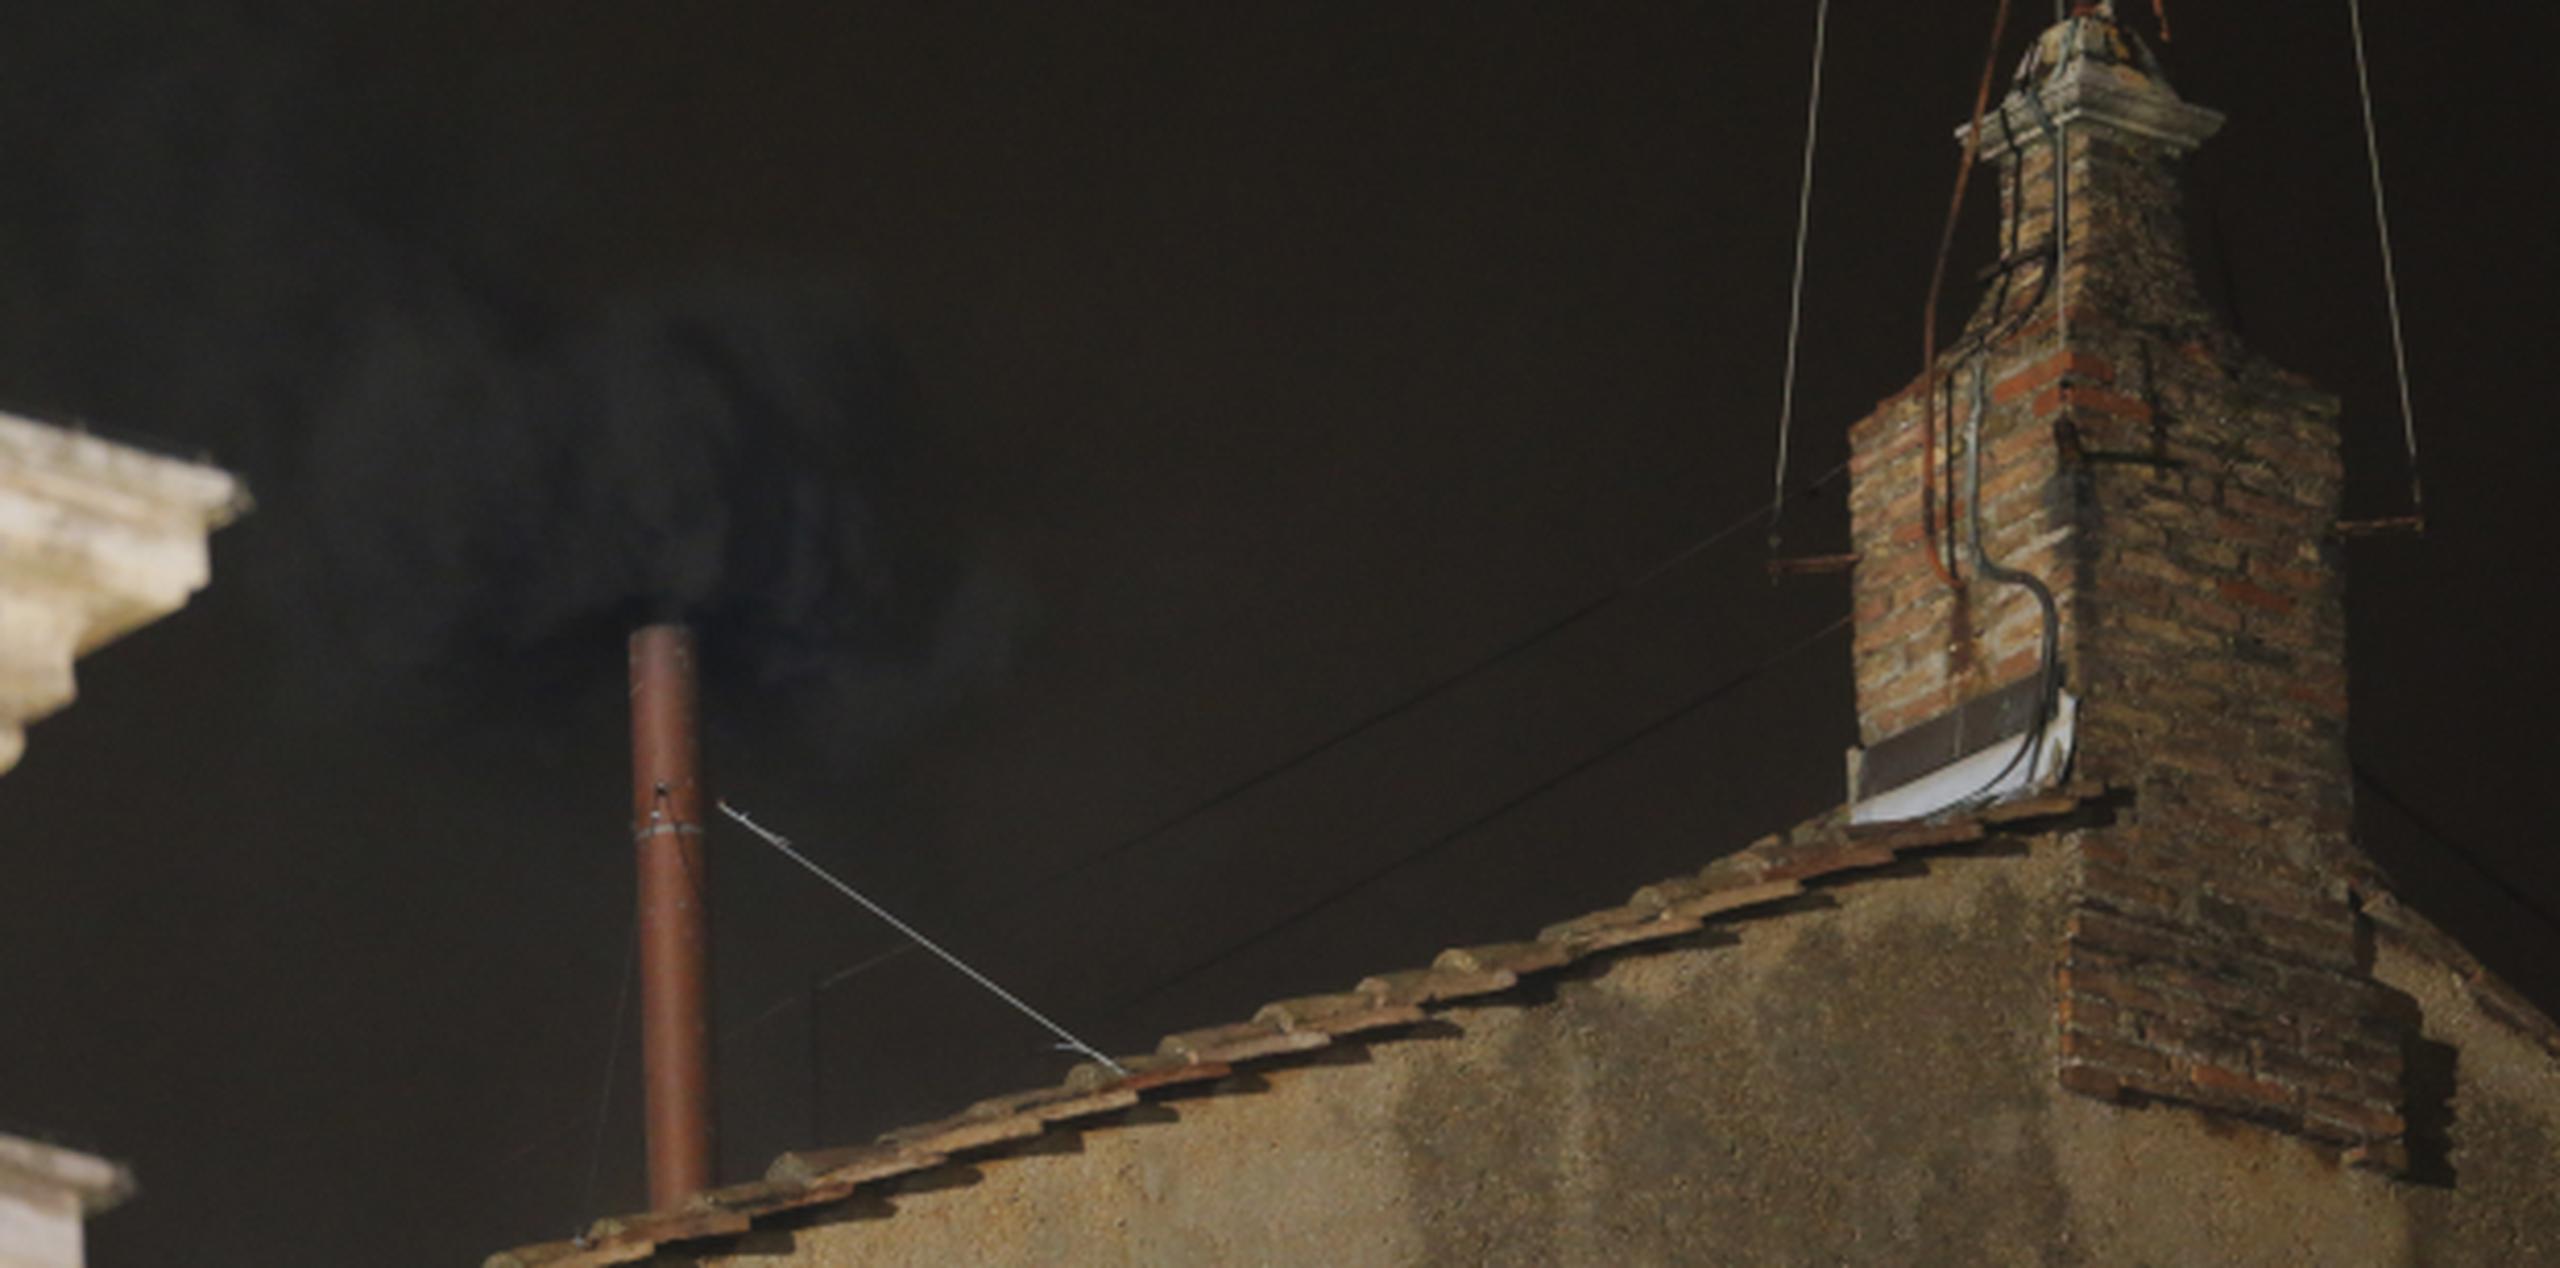 El humo negro, muy denso, salió por la chimenea durante un buen rato, para que no quedasen dudas de que era de ese color. (AP/Dmitry Lovetsky)